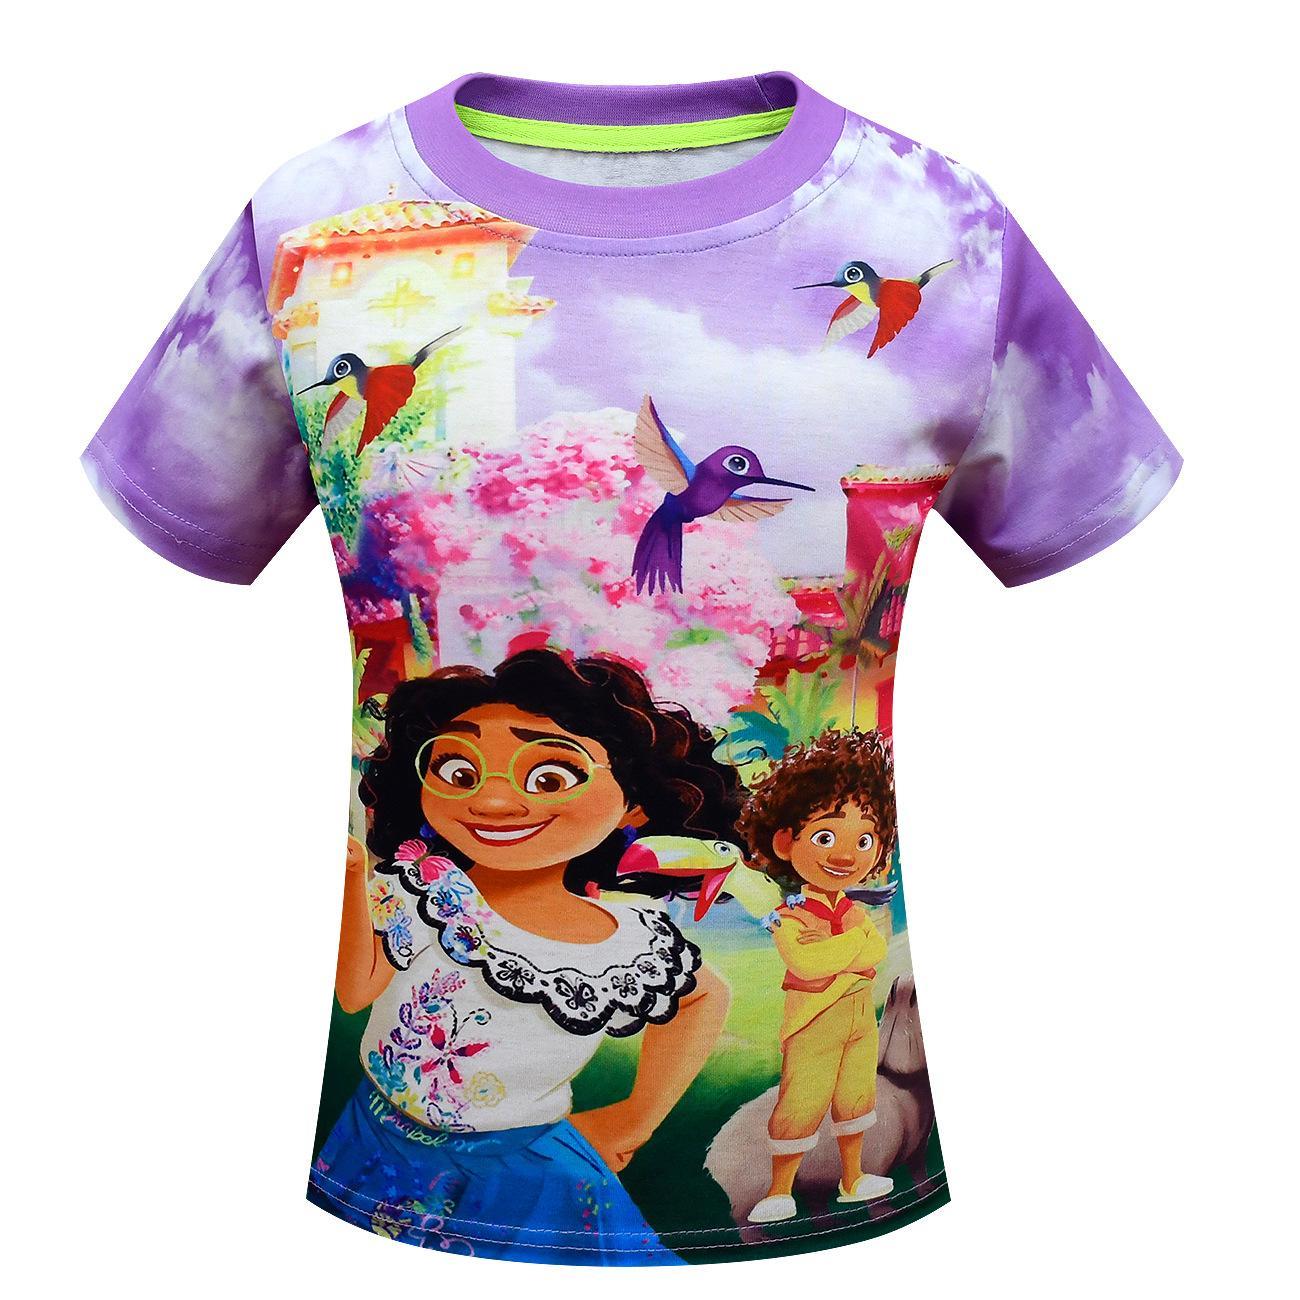 Vicanber Encanto Mirabel Printed T-Shirt Kids Girl Summer Tops Tee Shirts HOT(7-8Year)